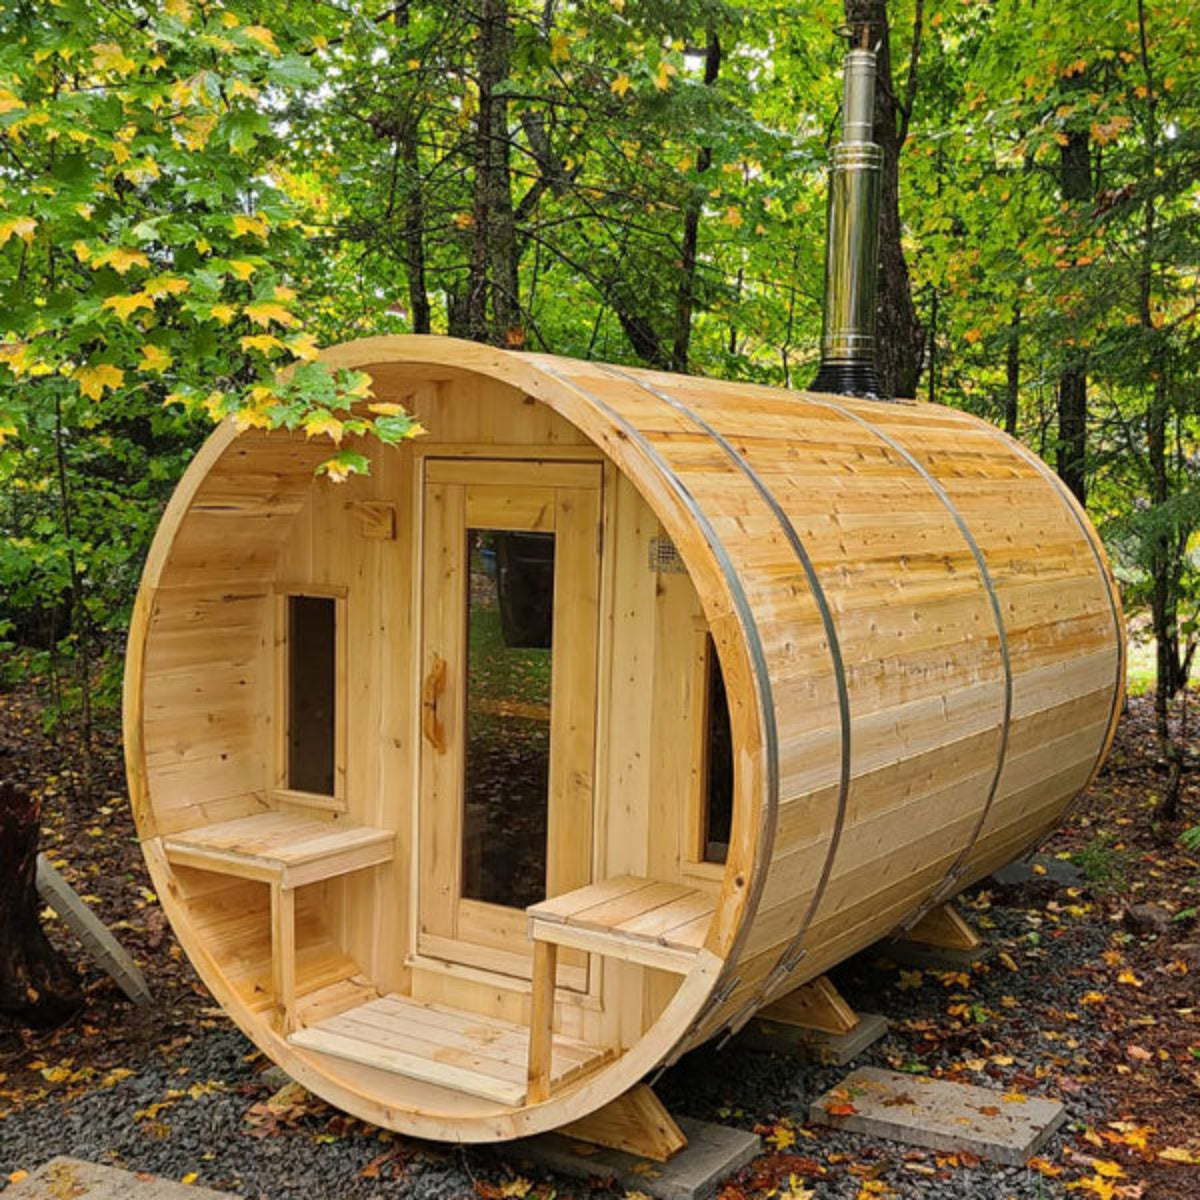 Leisurecraft Tranquility Barrel Sauna